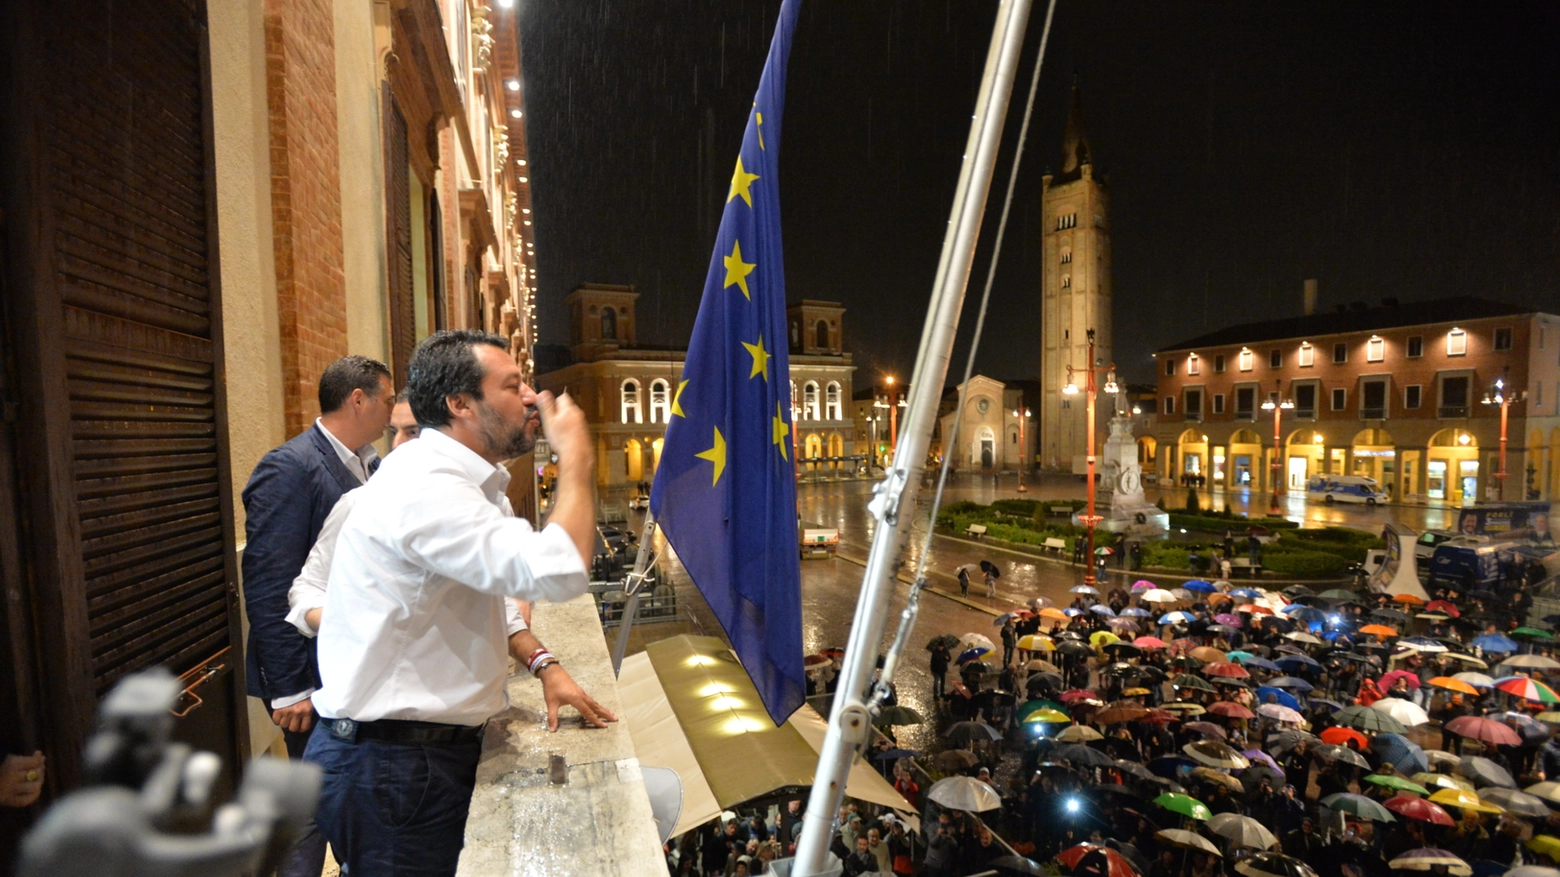 Salvini sul balcone del municipio di Forlì